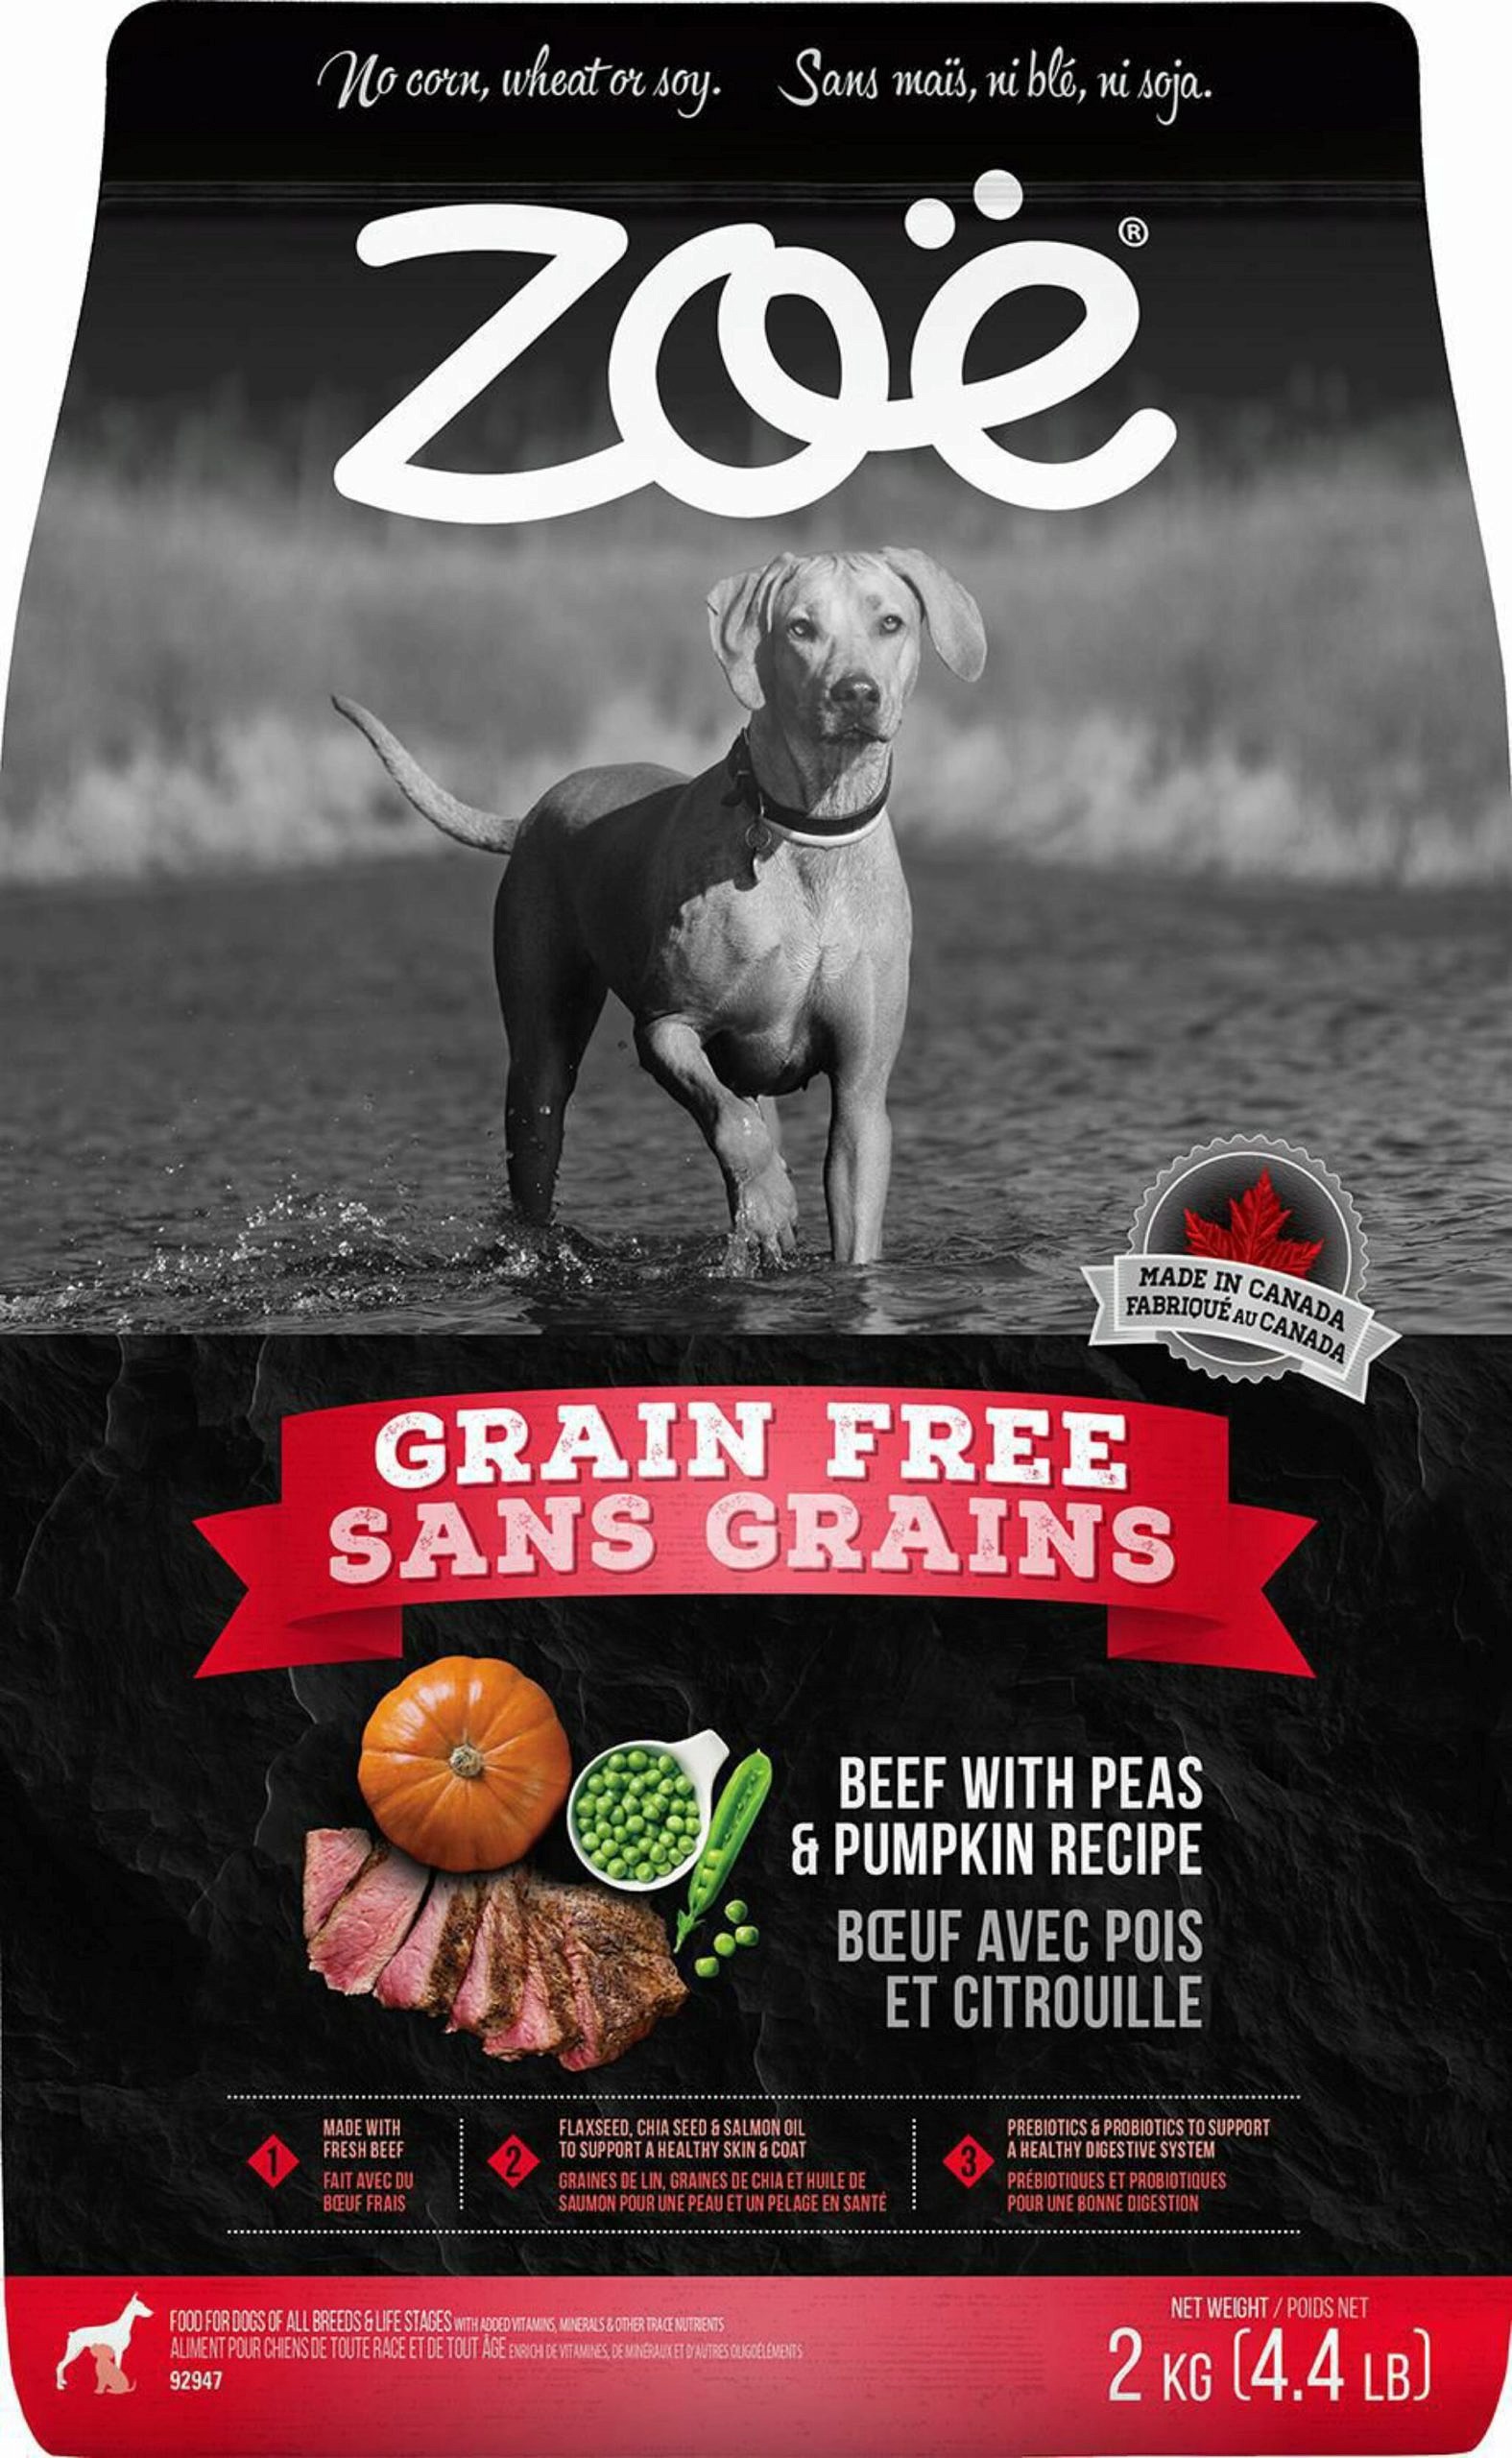 15 Meilleurs Aliments Pour Chiens Pour Les Terriers Americains De Pitbull. Notre Guide Dalimentation scaled 1